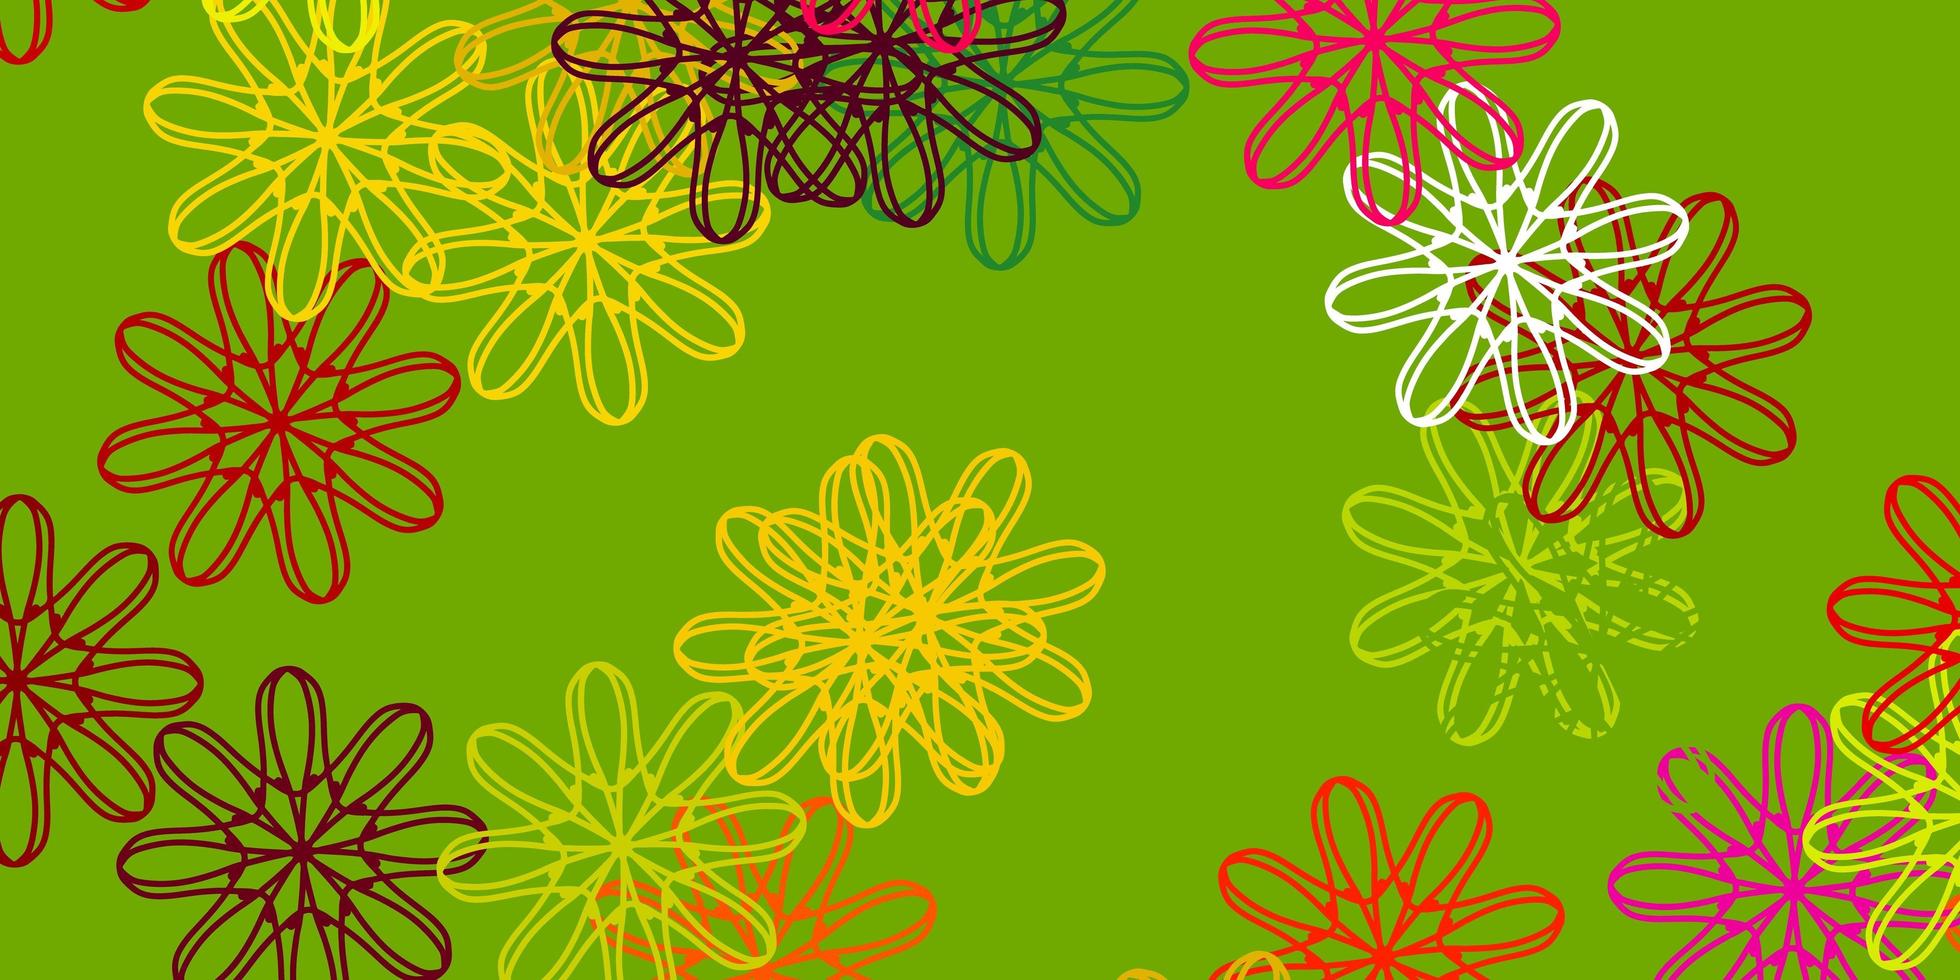 sfondo doodle vettoriale multicolore chiaro con fiori.